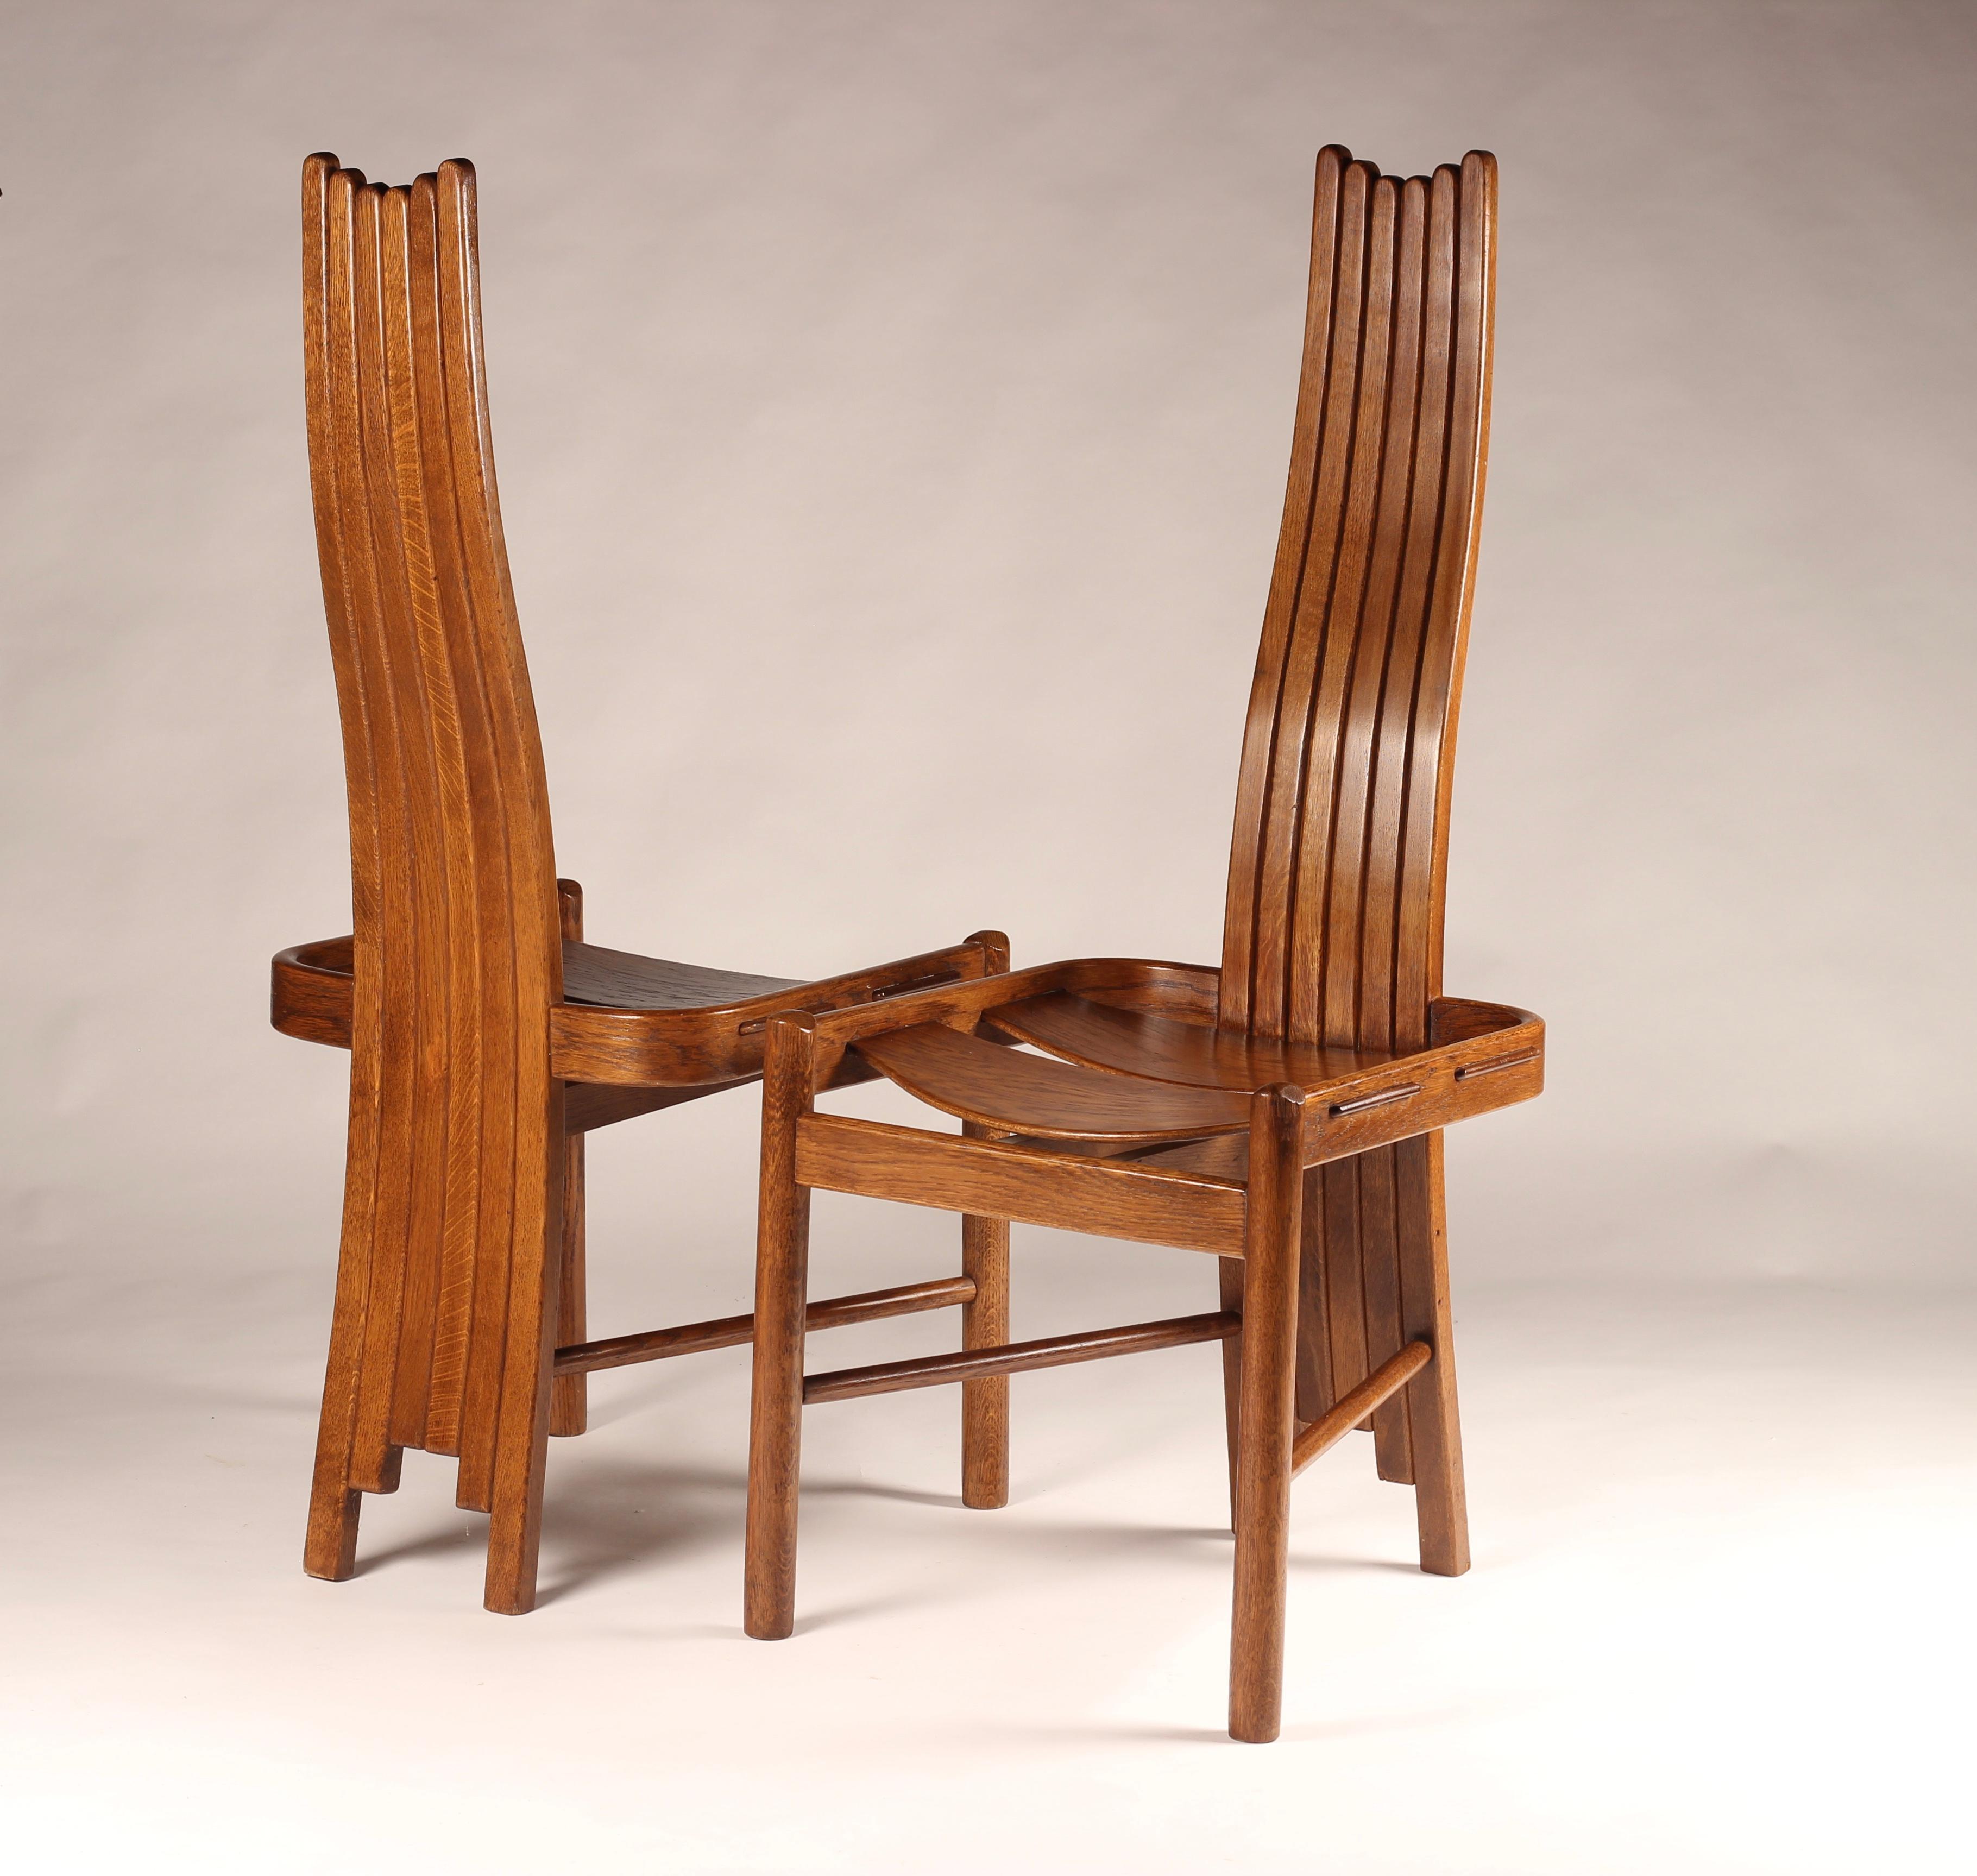 Un ensemble très intéressant de quatre chaises à manger ou chaises d'appoint en chêne, de belle facture, à la manière de Charles Rennie Mackintosh. A cheval sur les styles du début du 20ème siècle, ces chaises montrent des signes du mouvement Arts &